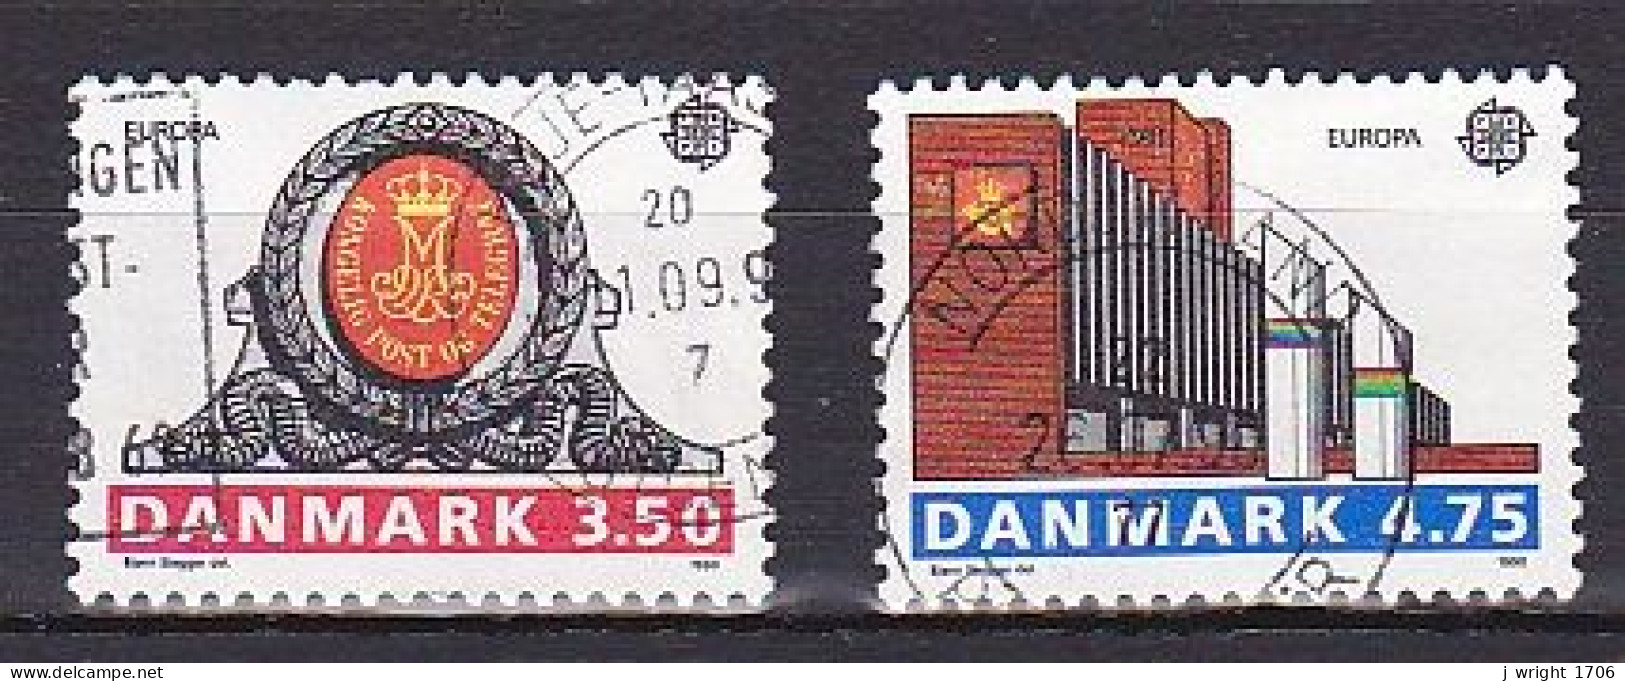 Denmark, 1990, Europa CEPT, Set, USED - Gebraucht